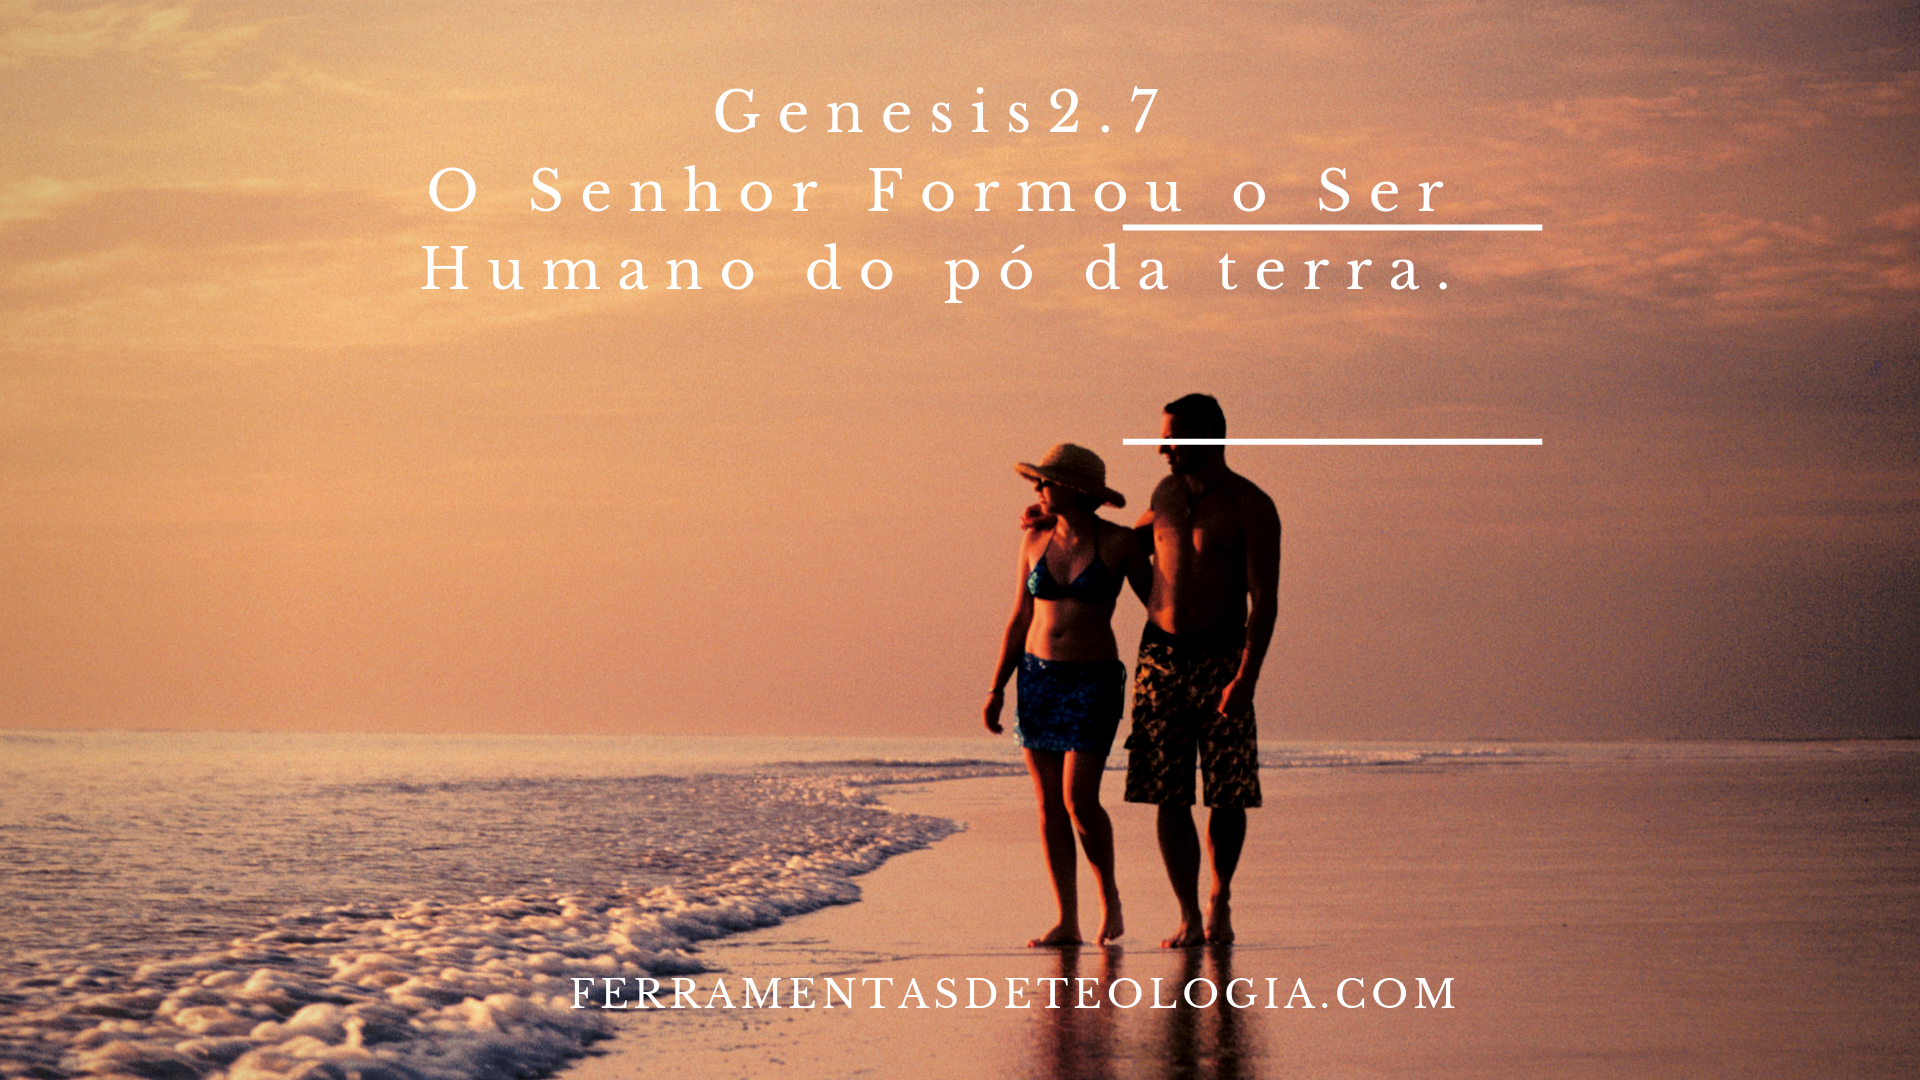 GENESIS 2.7 - Gênesis 2 – O Senhor Formou o Ser Humano do pó da terra